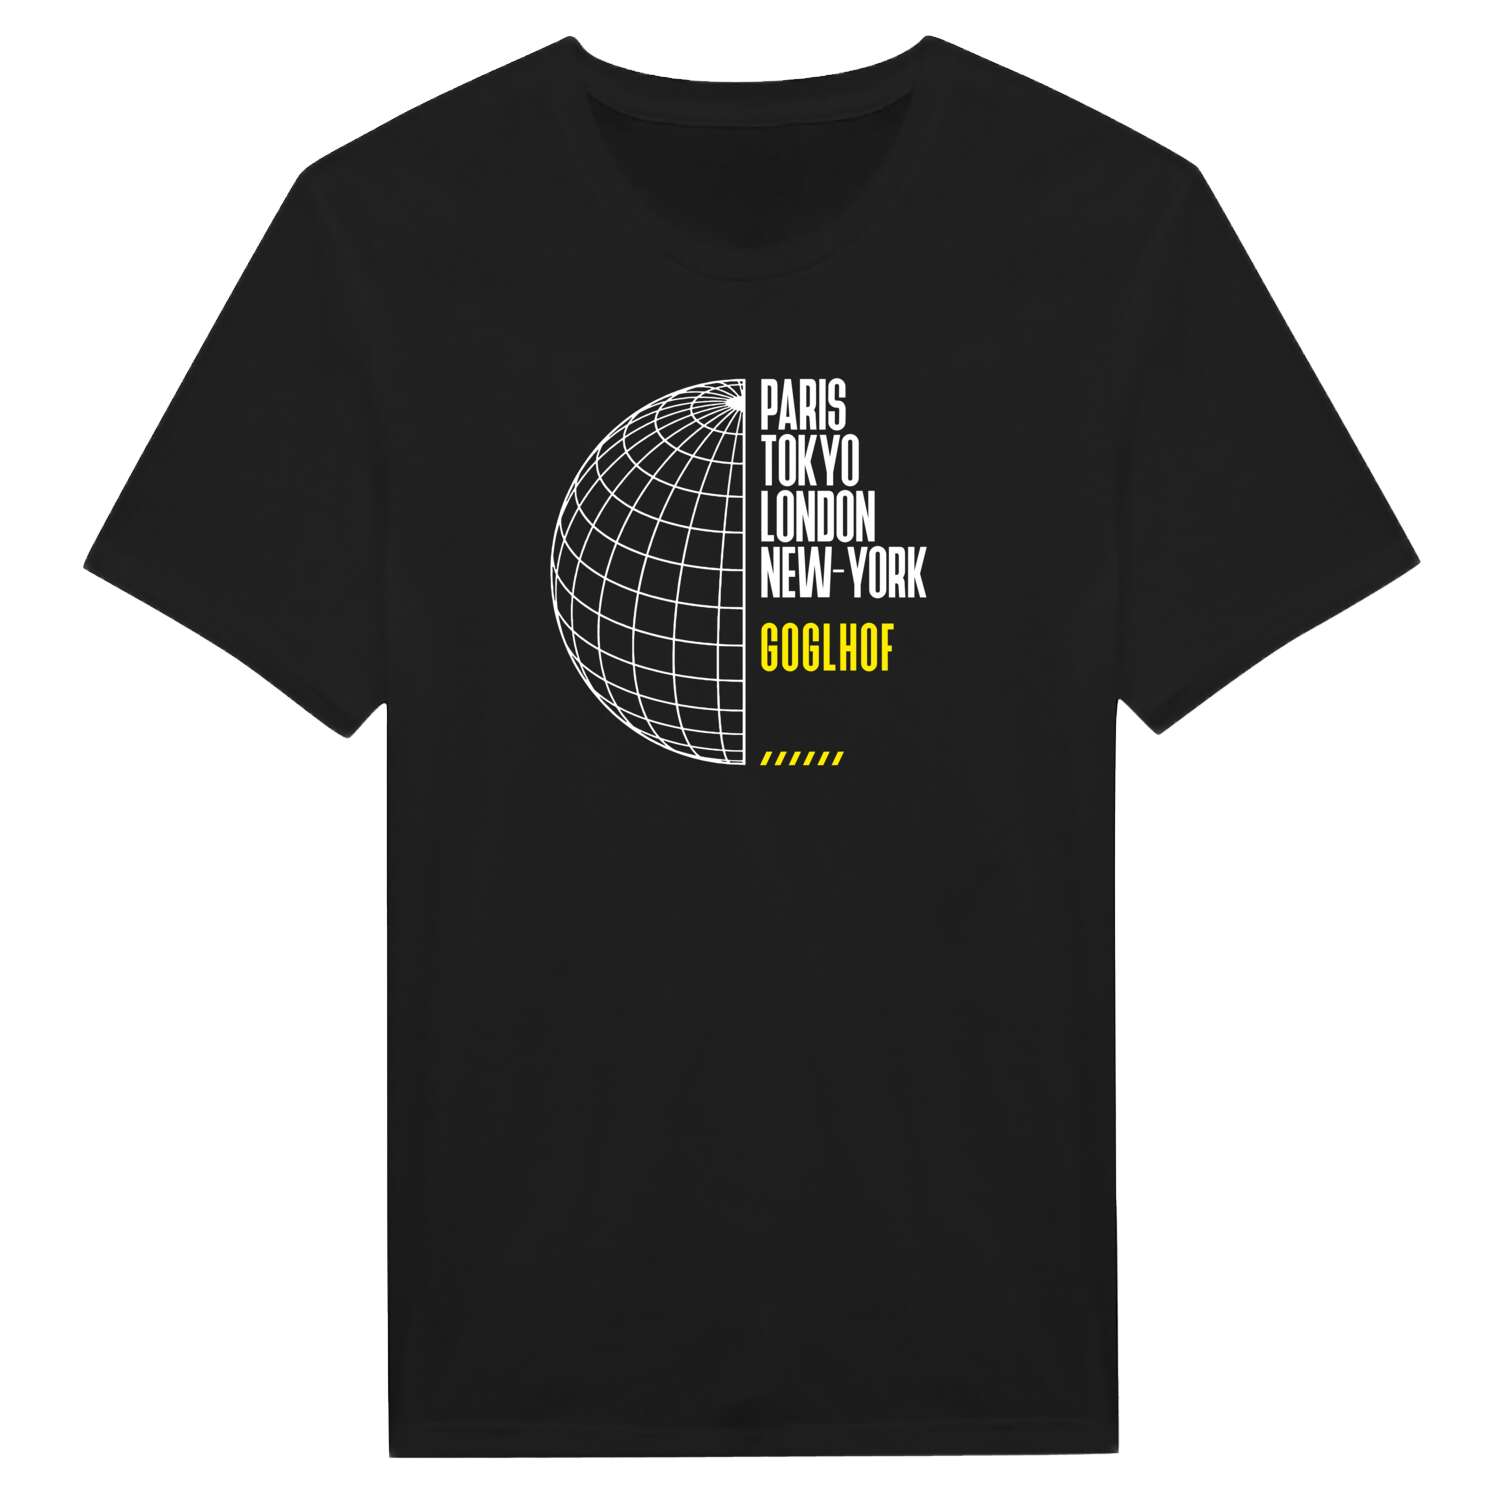 Goglhof T-Shirt »Paris Tokyo London«